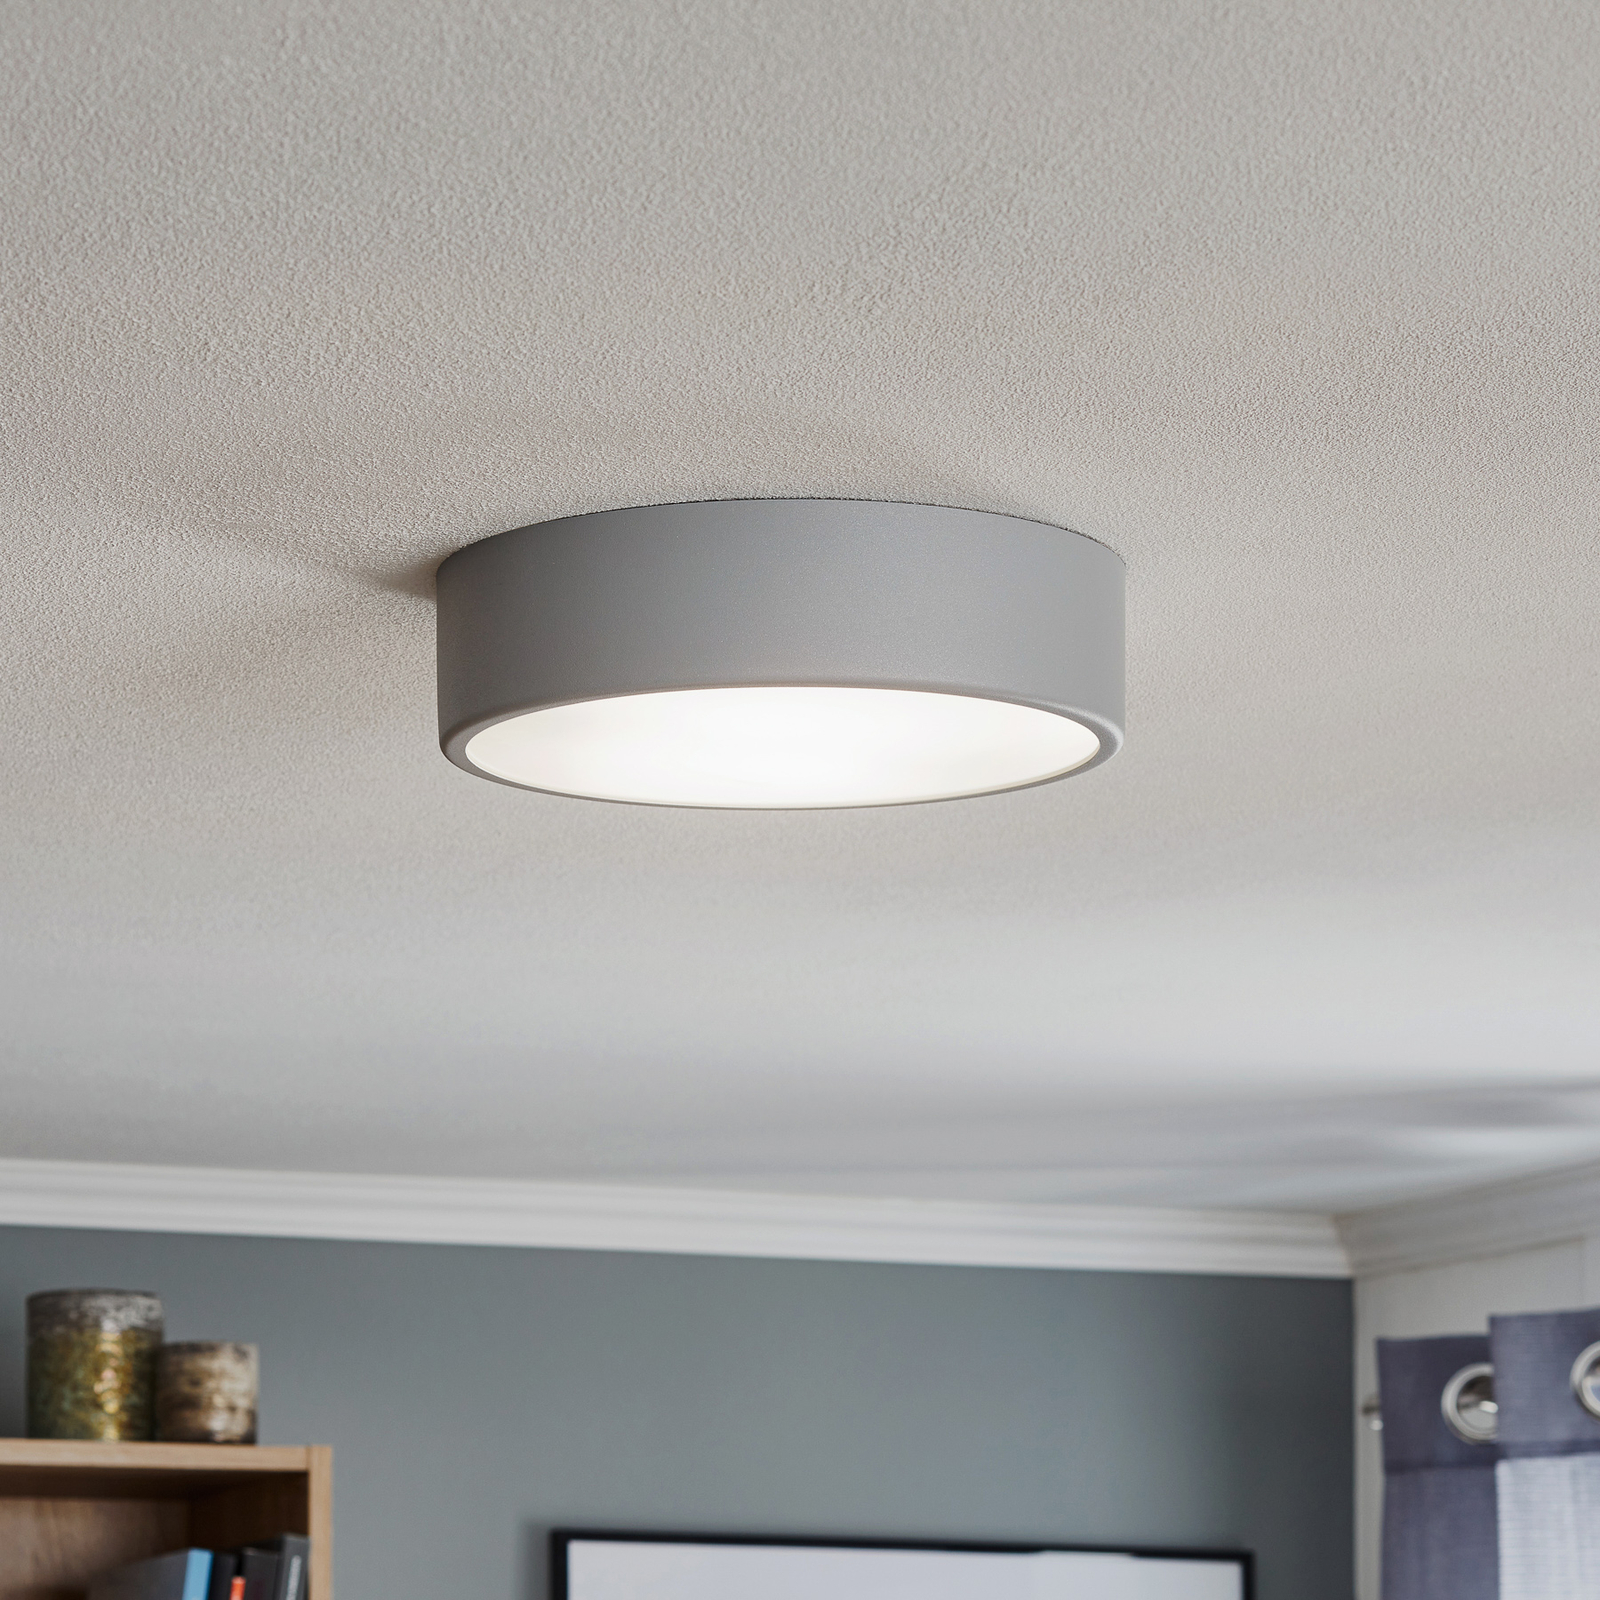 Cleo 300 ceiling light, sensor, Ø 30 cm grey